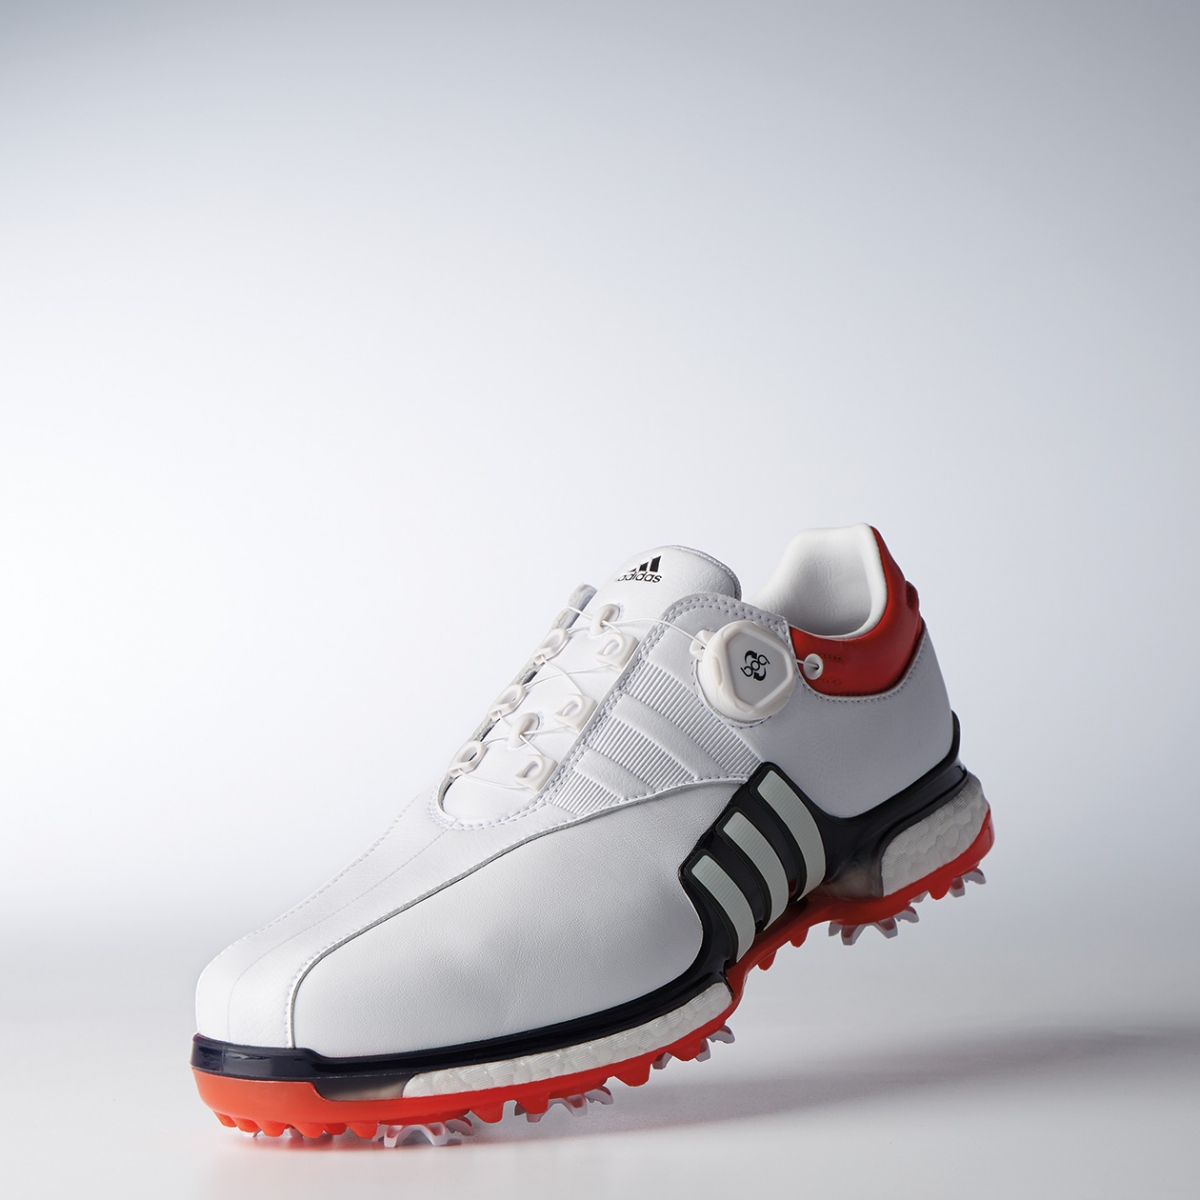 adidas Golf推出最新TOUR360 EQT Boa鞋款